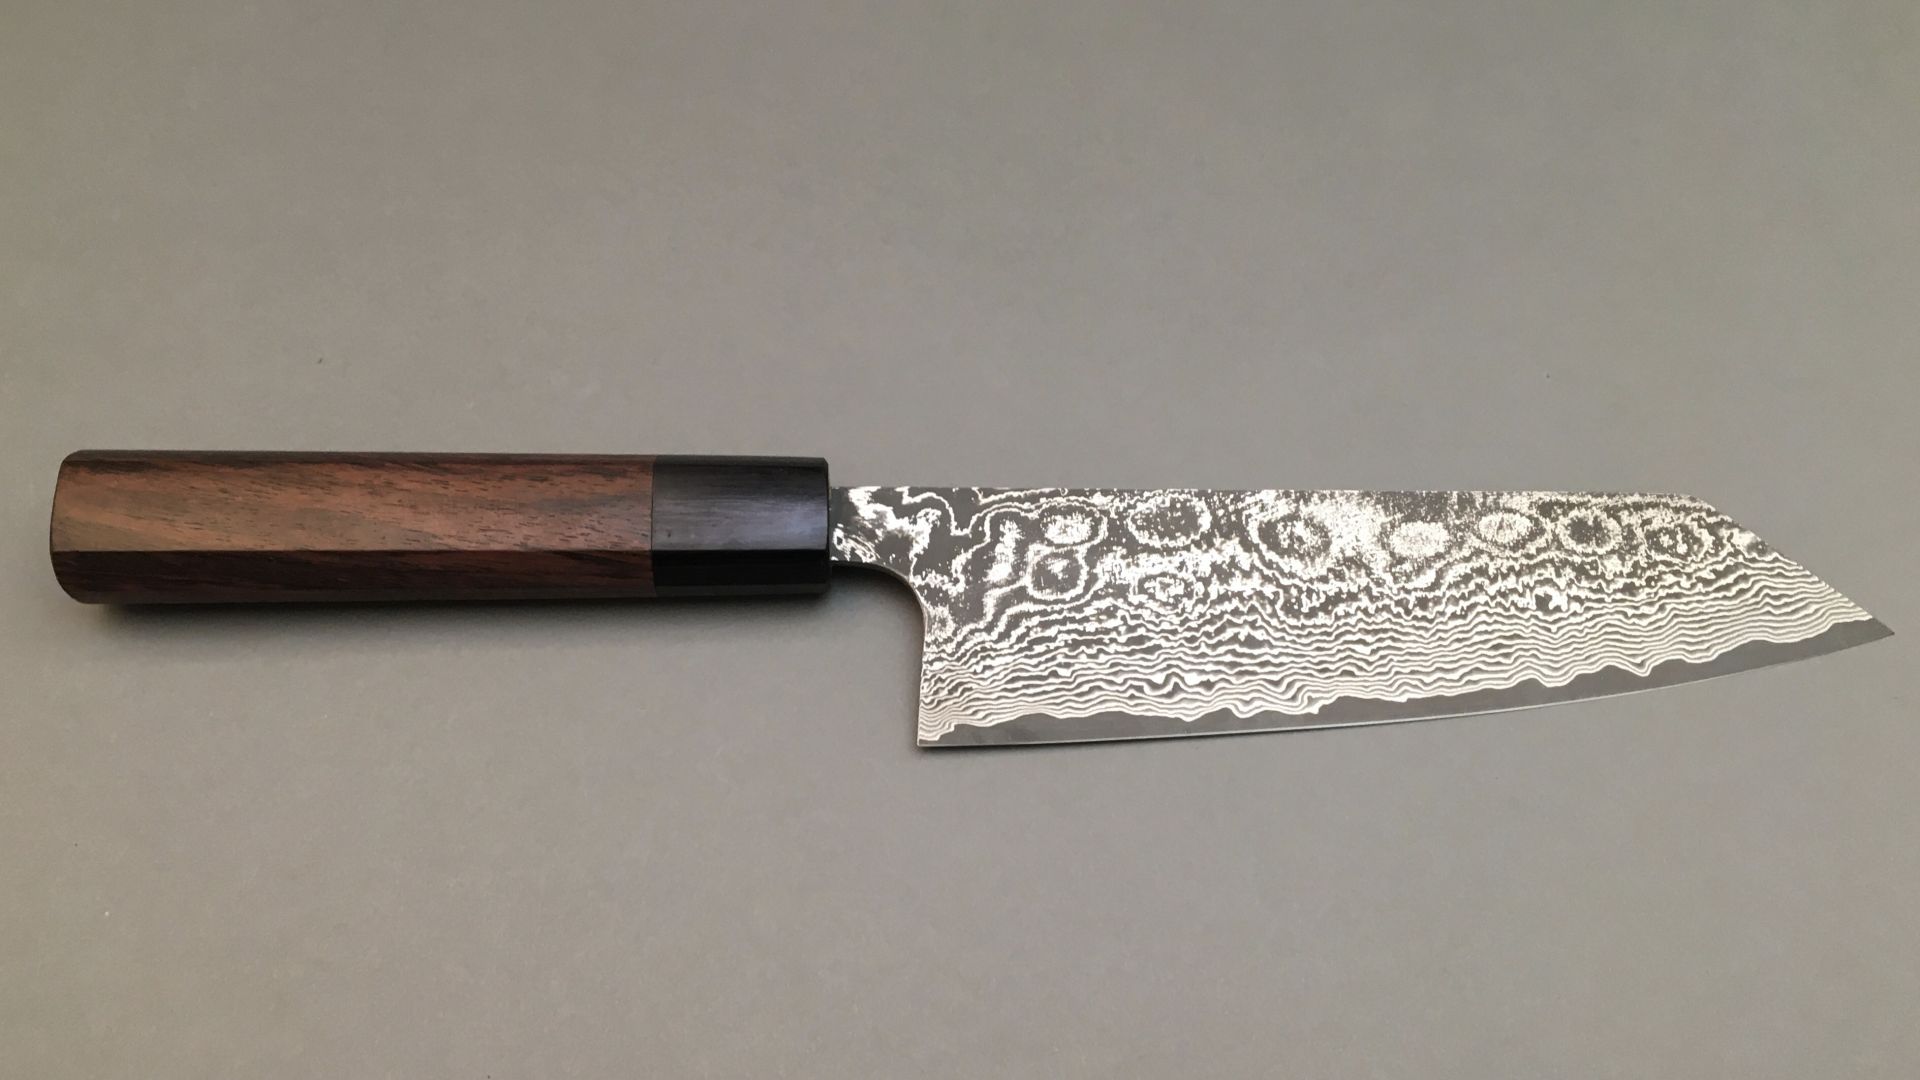 1.3.1 Les types de lames - Japanese knives / Couteaux japonais